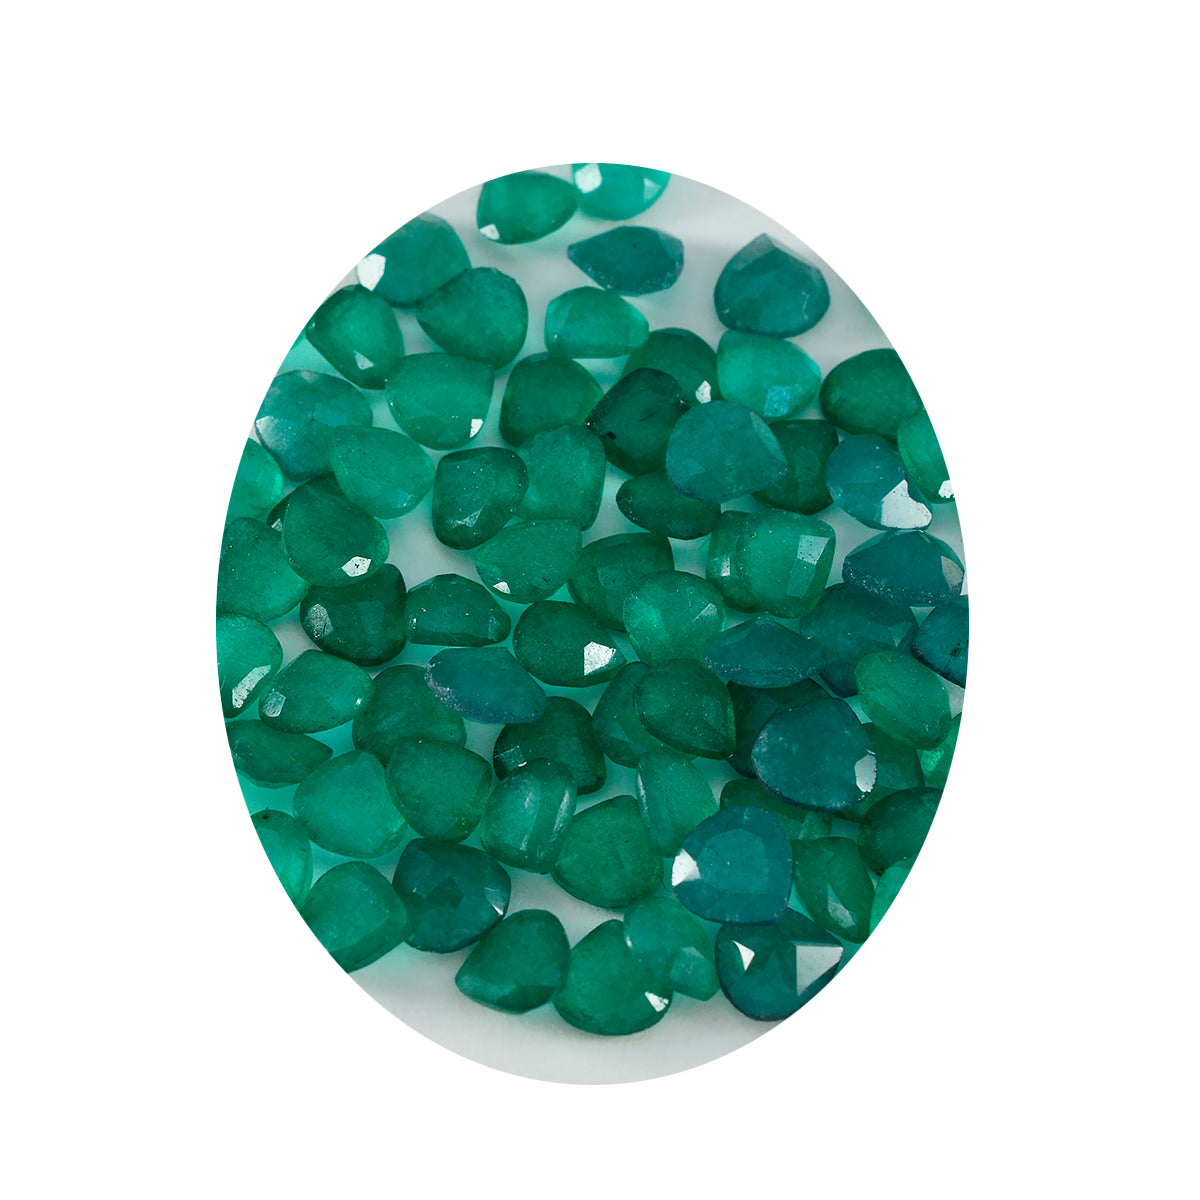 riyogems 1 шт. натуральный зеленый яшма ограненный 6x6 мм драгоценный камень в форме сердца удивительного качества